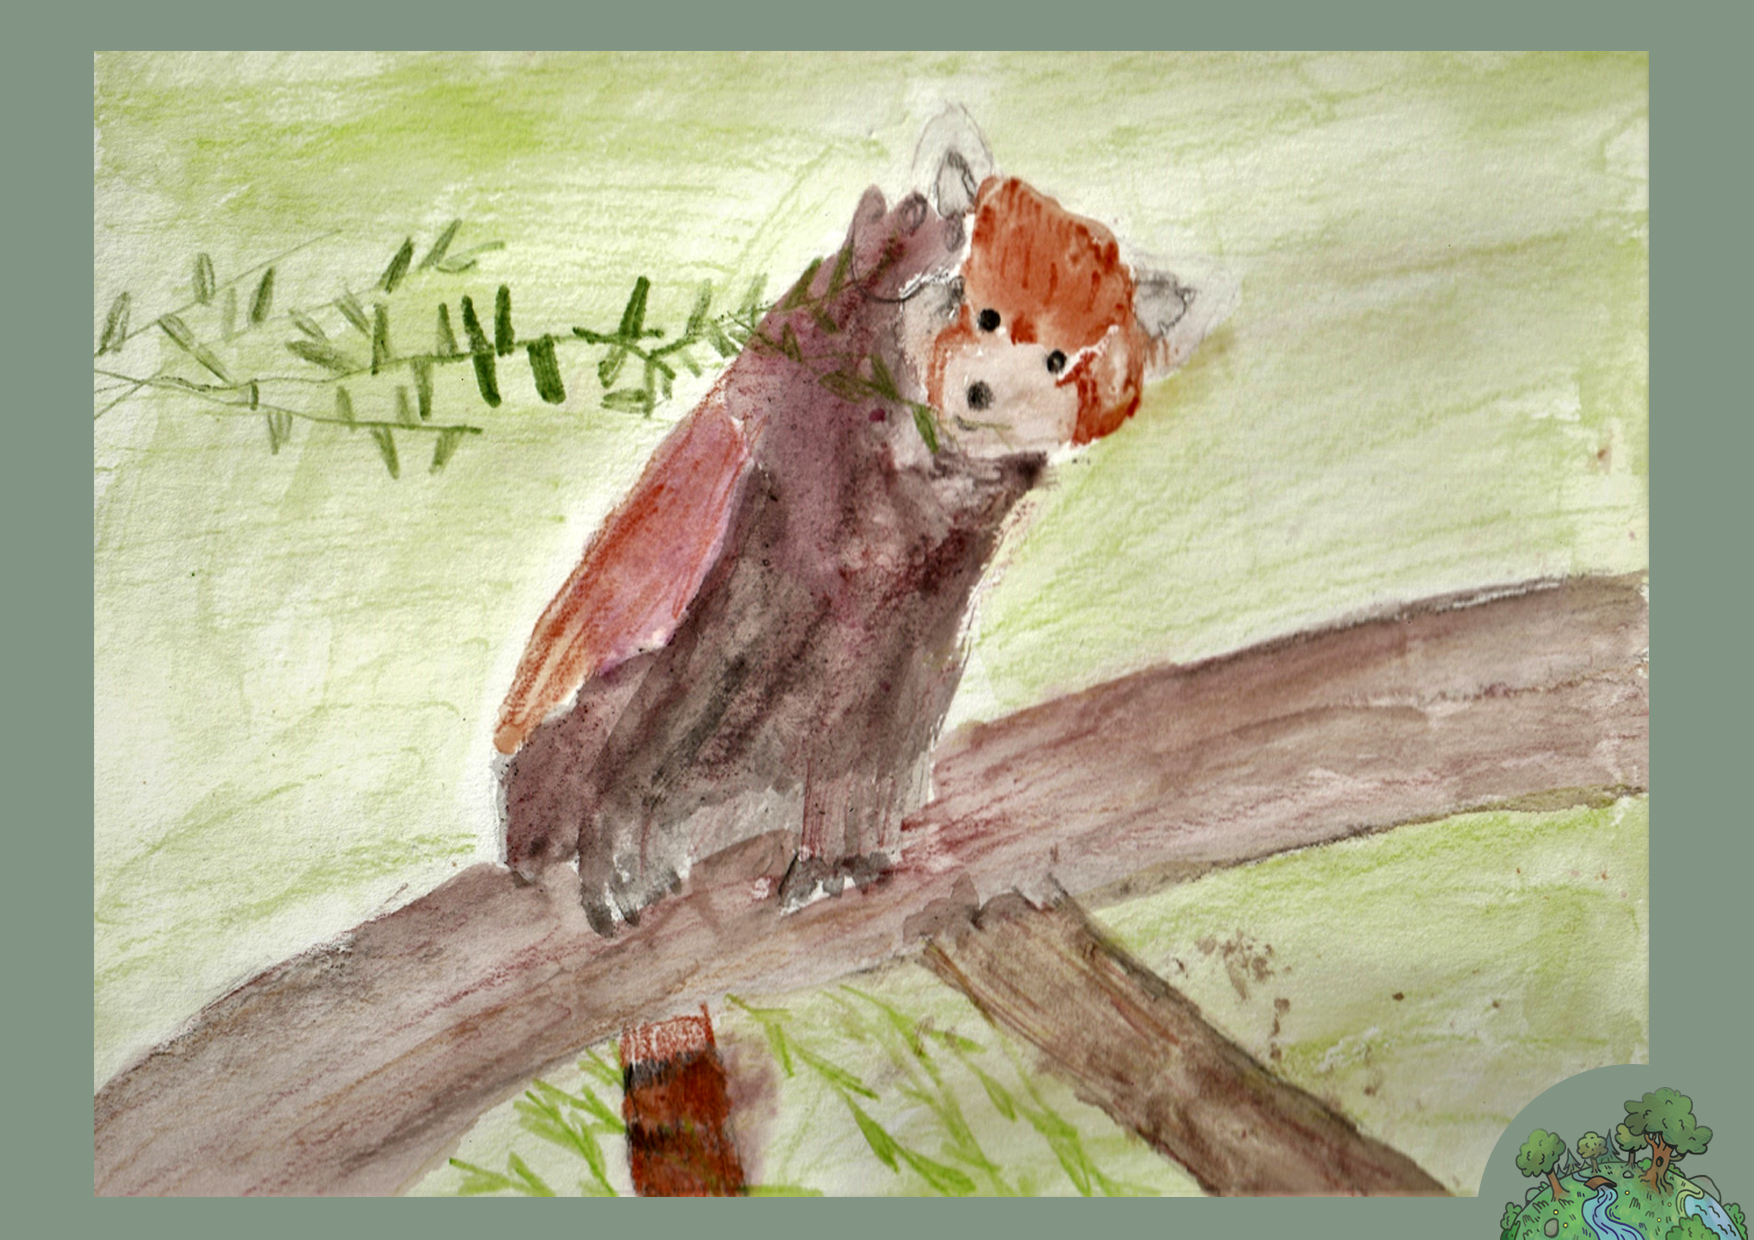 Cziehso Zoey, 8 éves<br />A kép címe: A vörös panda veszélyeztetett állat<br />Alkalmazott technika: akvarell ceruza<br />